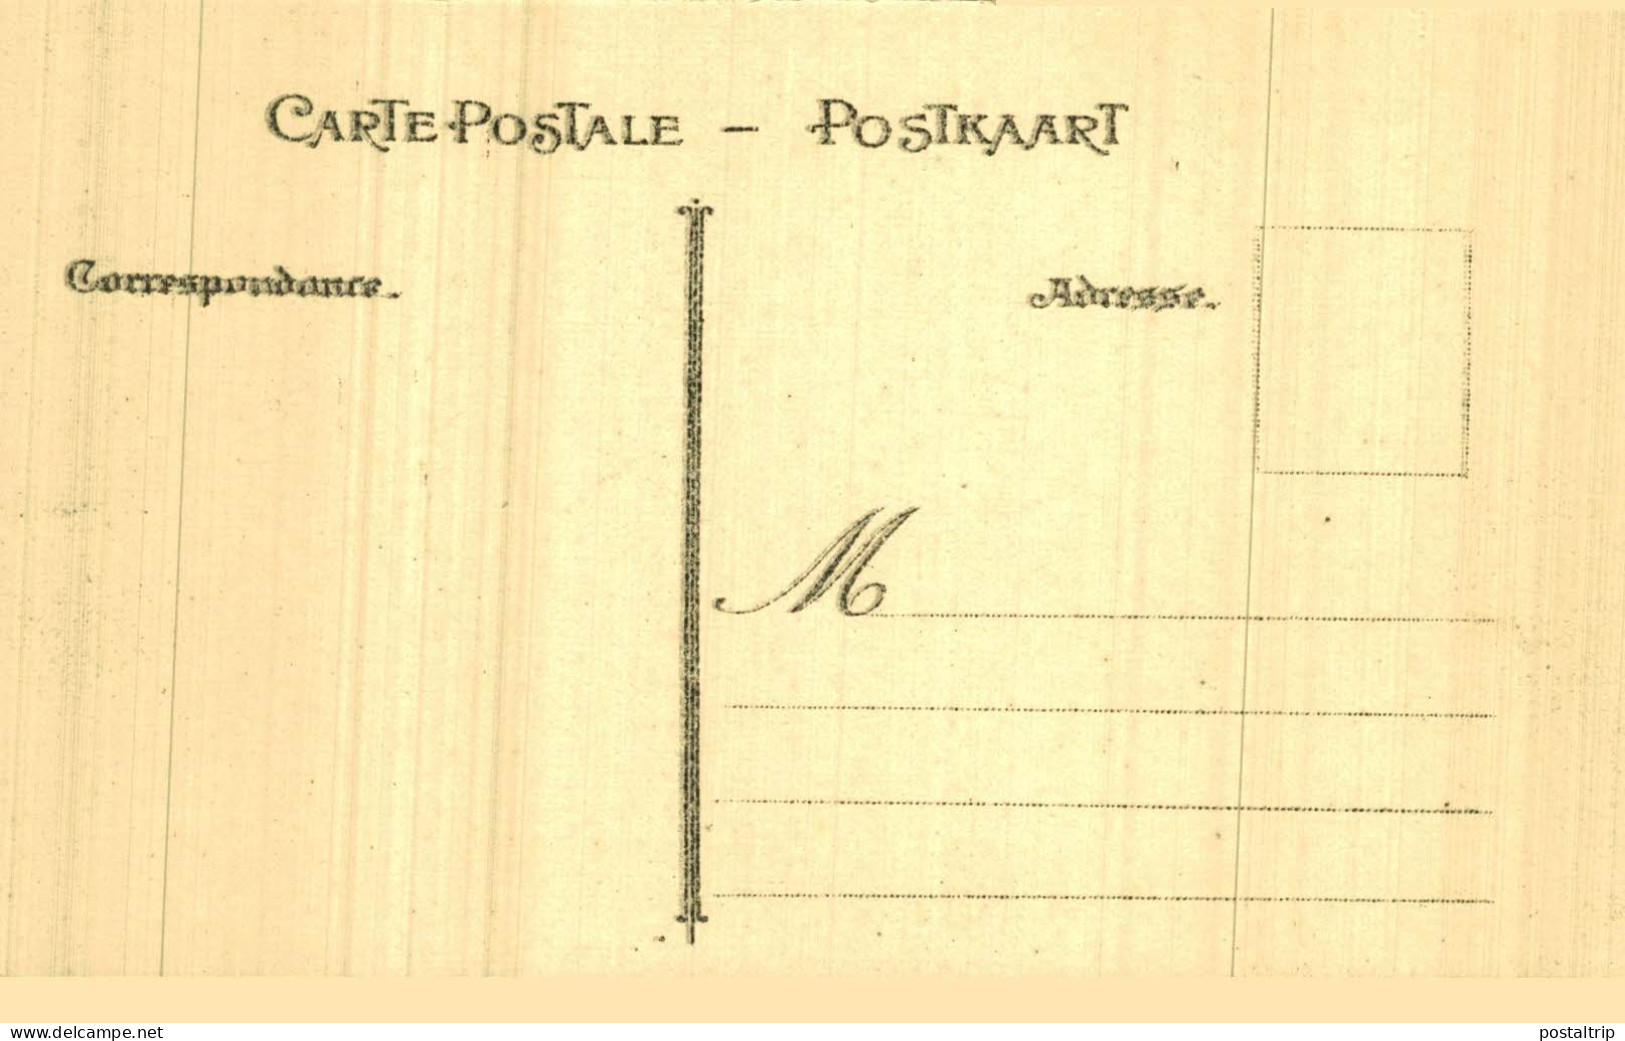 LOTE 40 POSTALES HAINAUT Tournai - Cortège-Tournoi de Chevalerie (1513-1913)